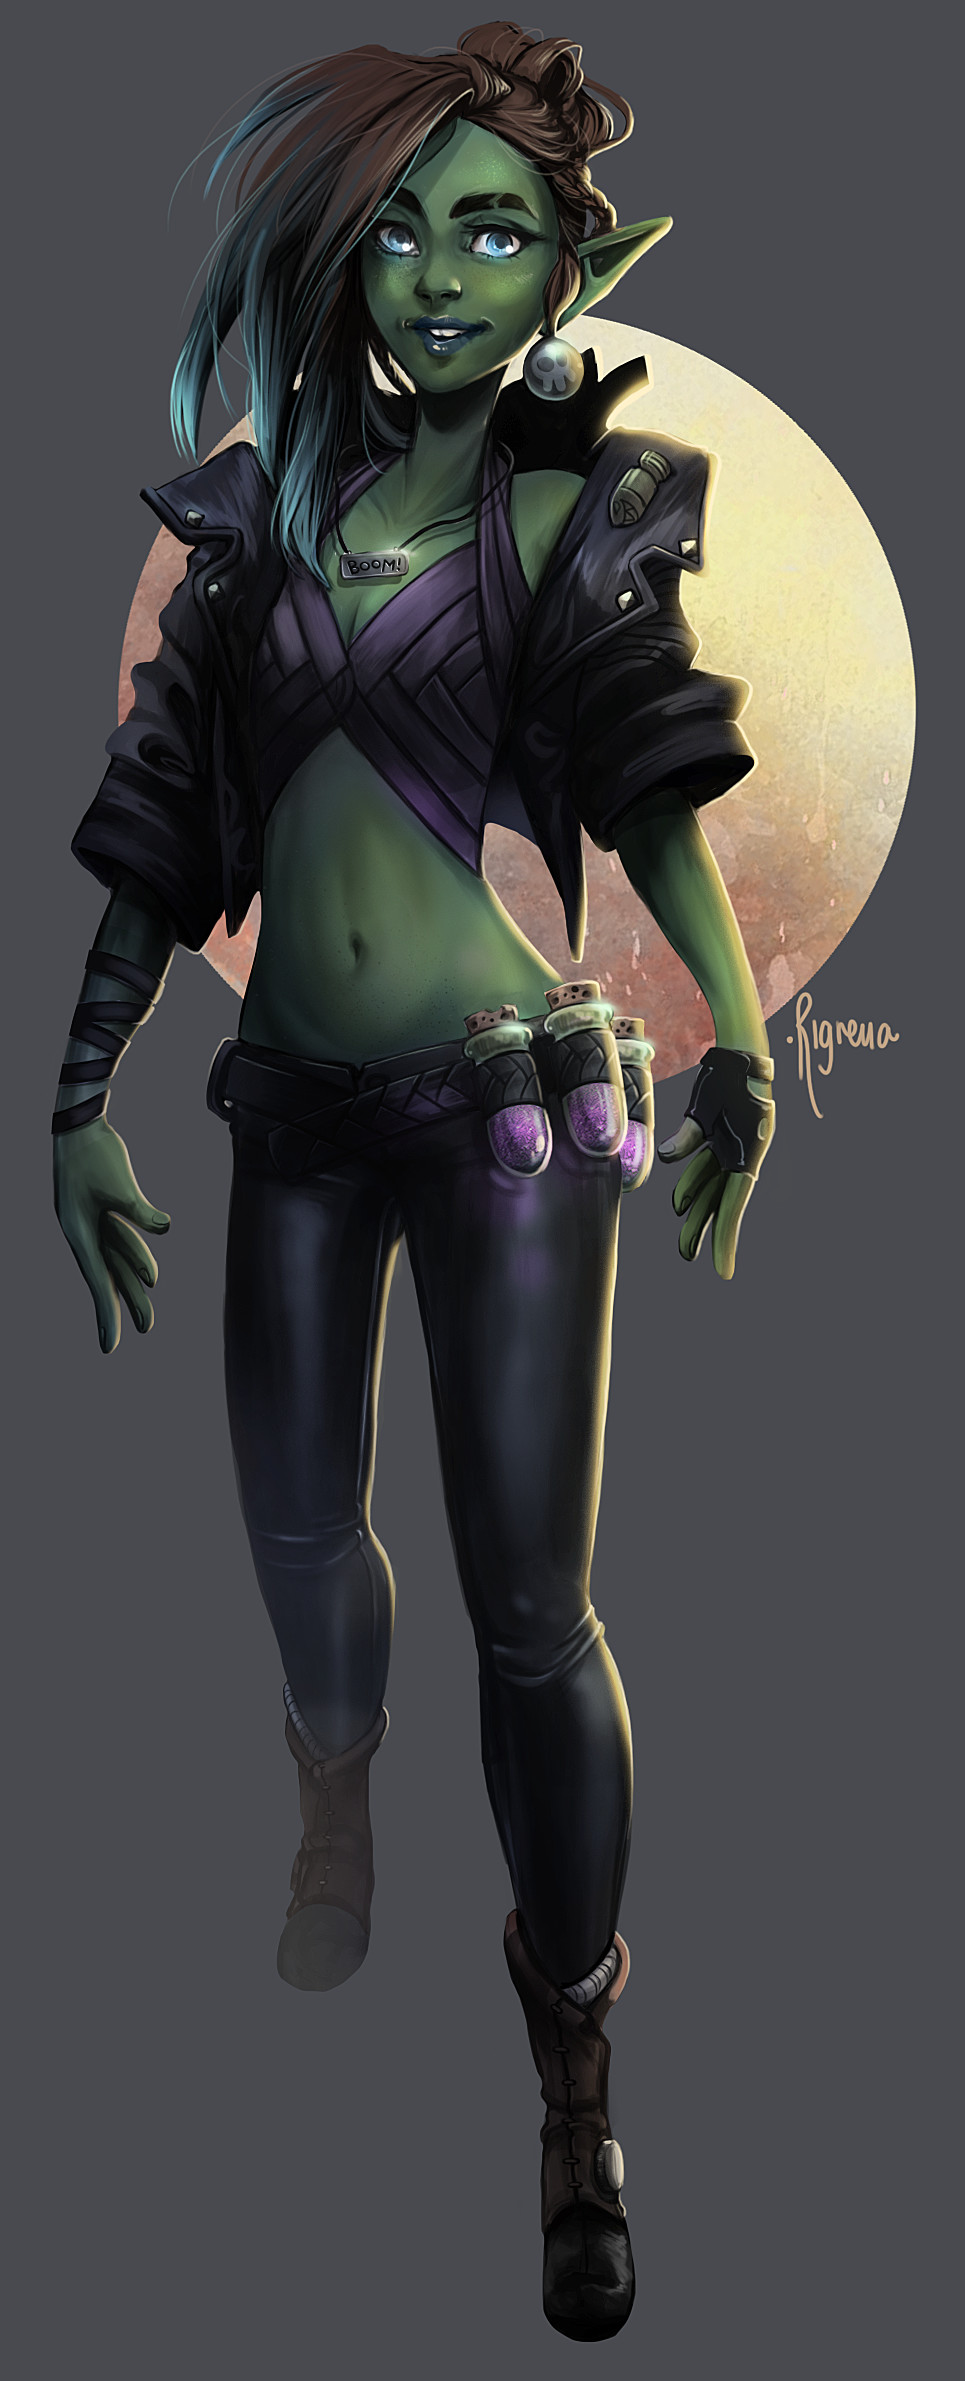 Goblin girl concept art.